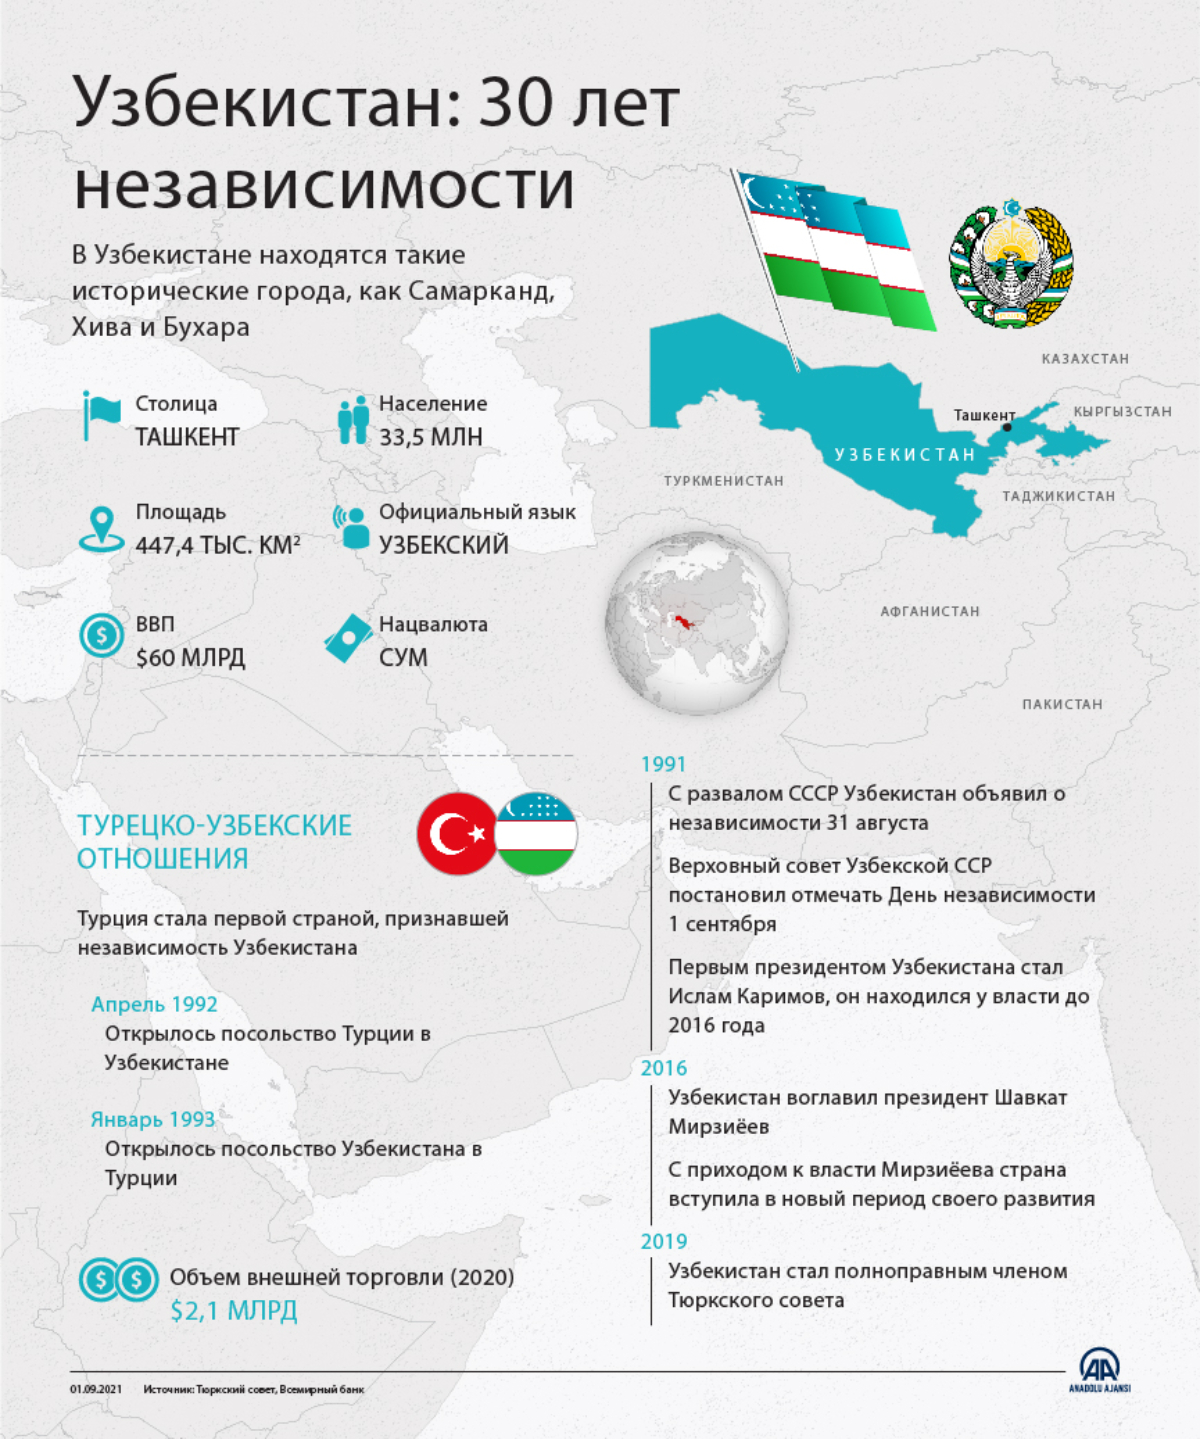 Узбекистан: 30 лет независимости